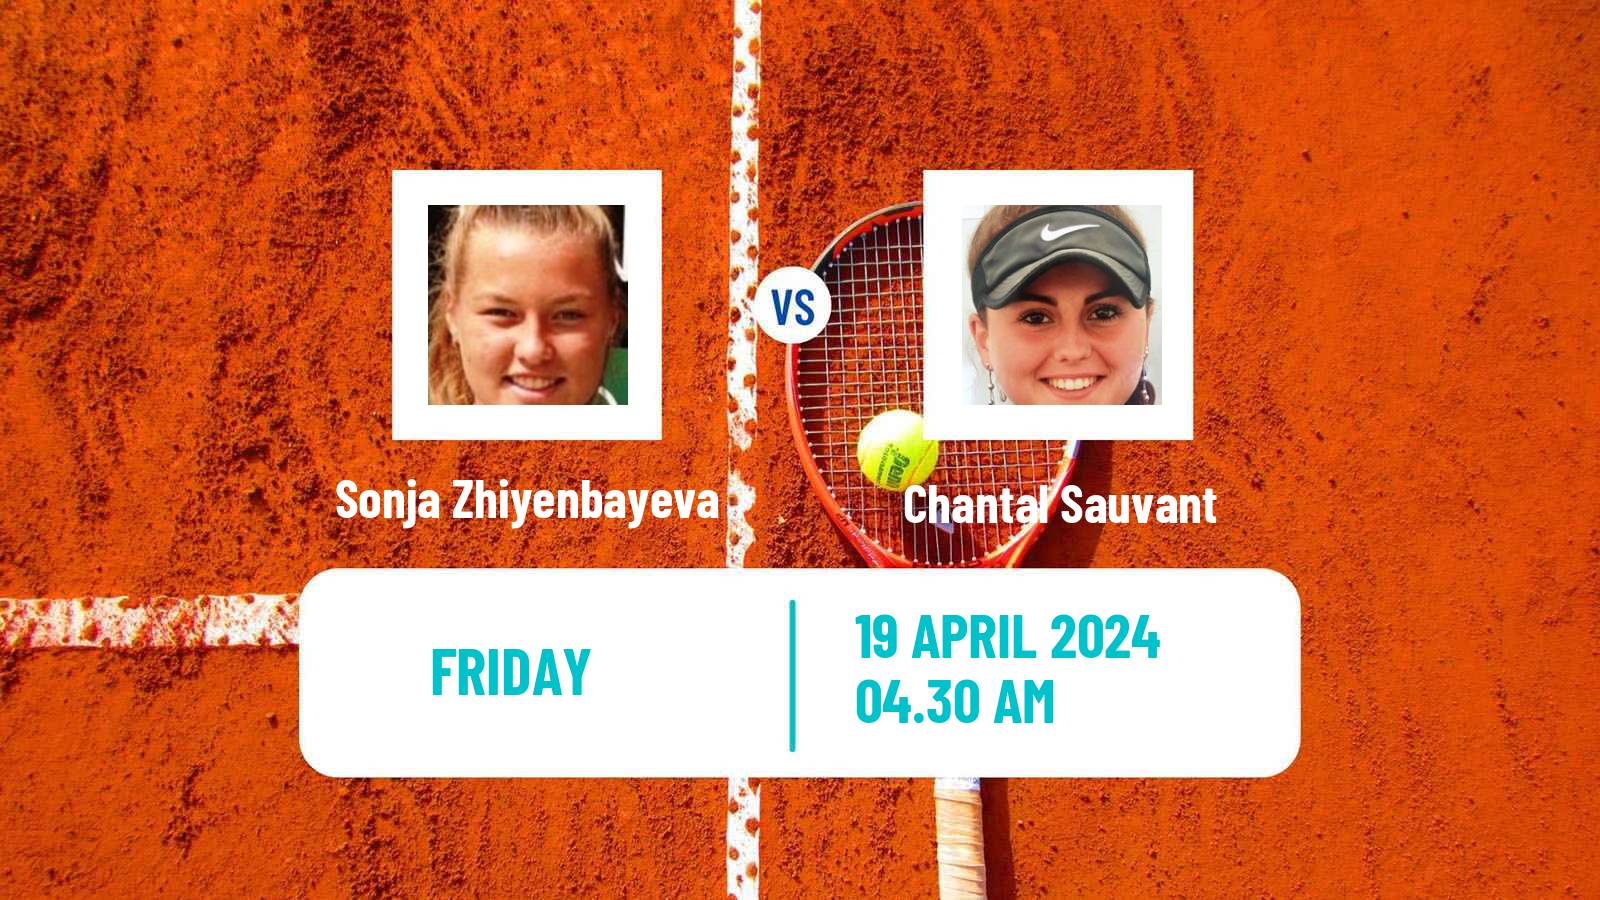 Tennis ITF W15 Antalya 10 Women Sonja Zhiyenbayeva - Chantal Sauvant